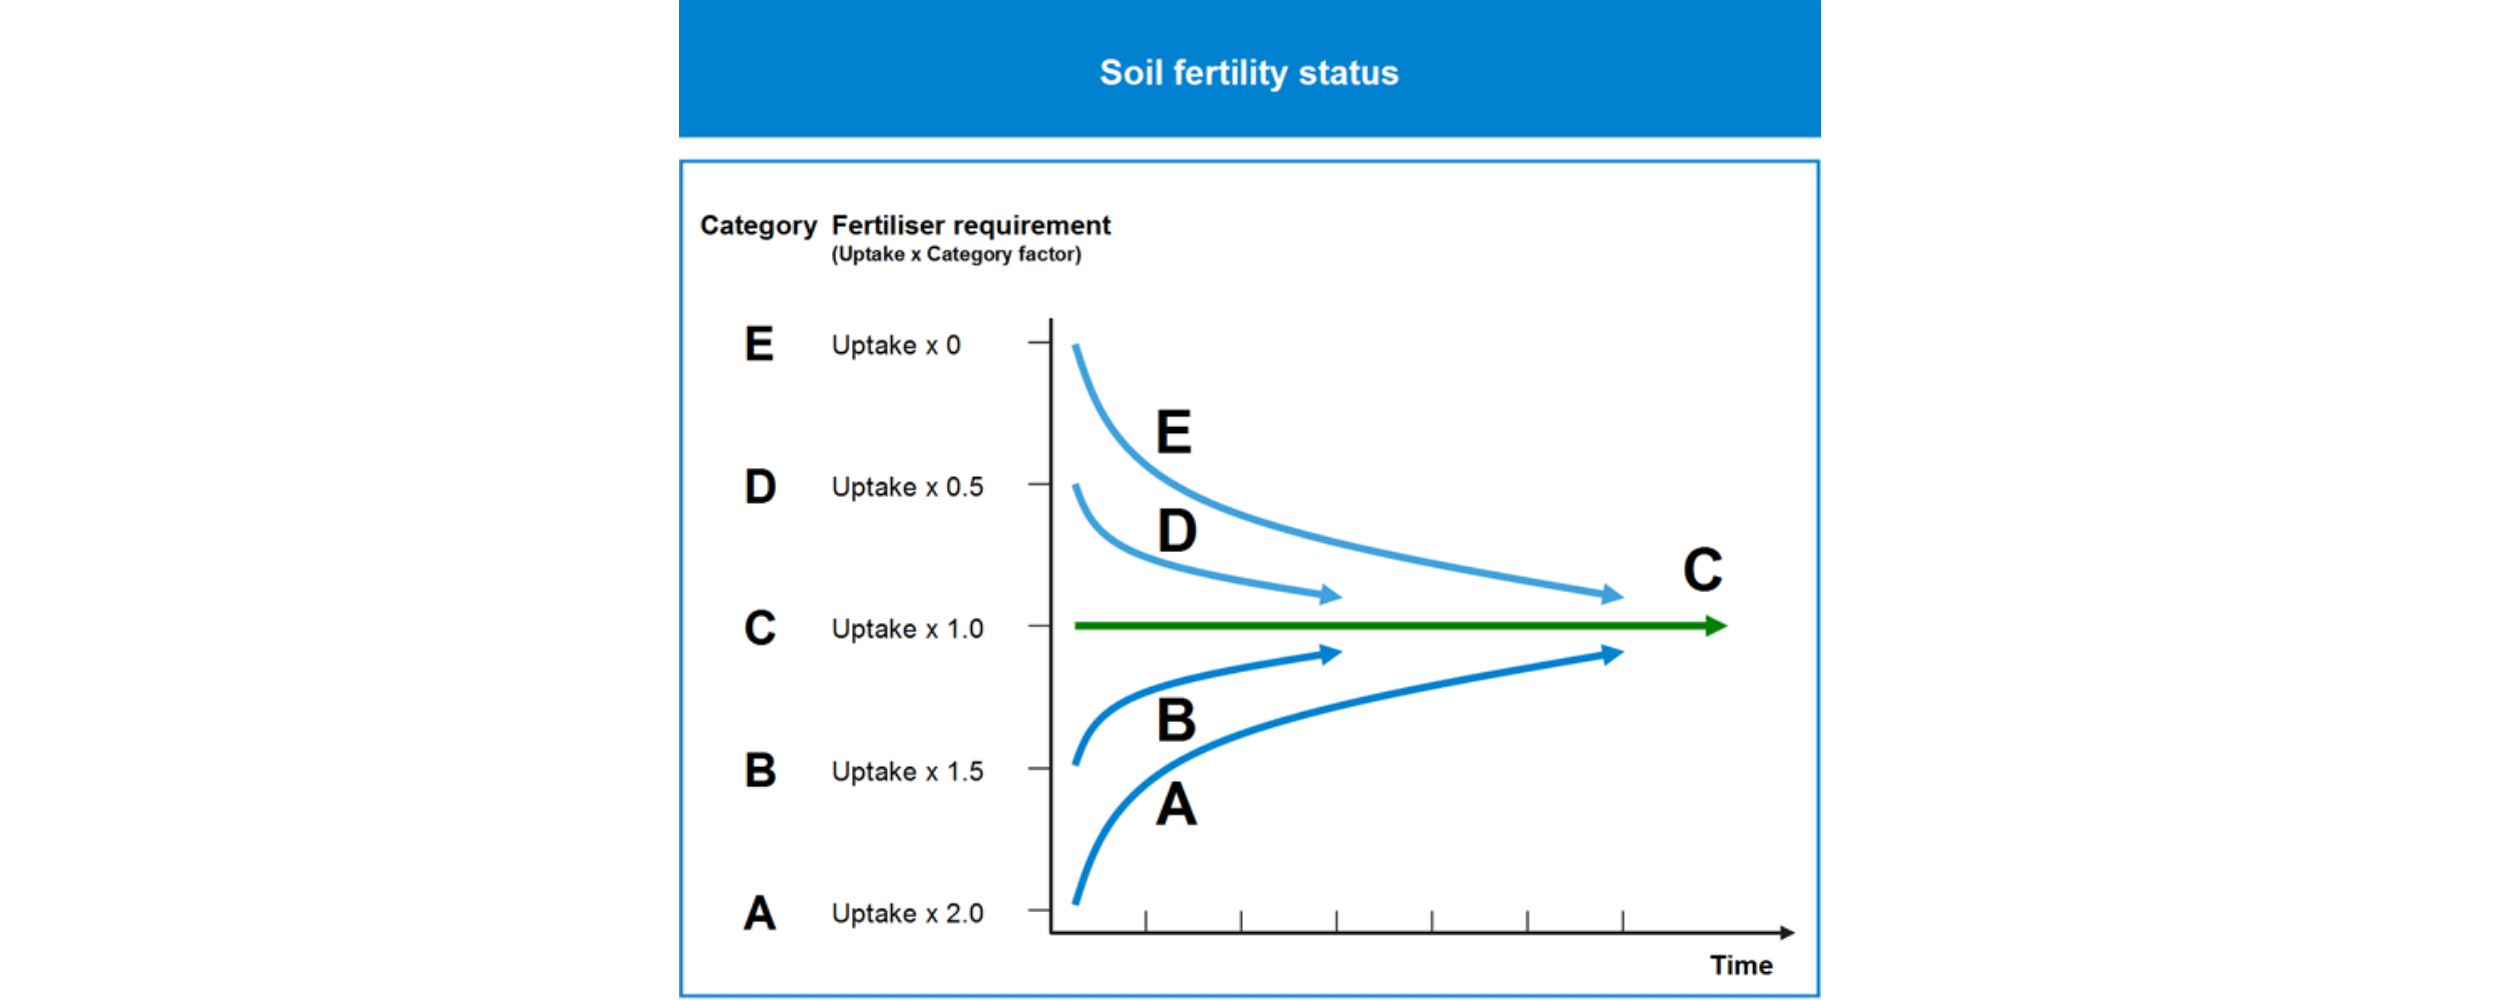 Soil fertility status